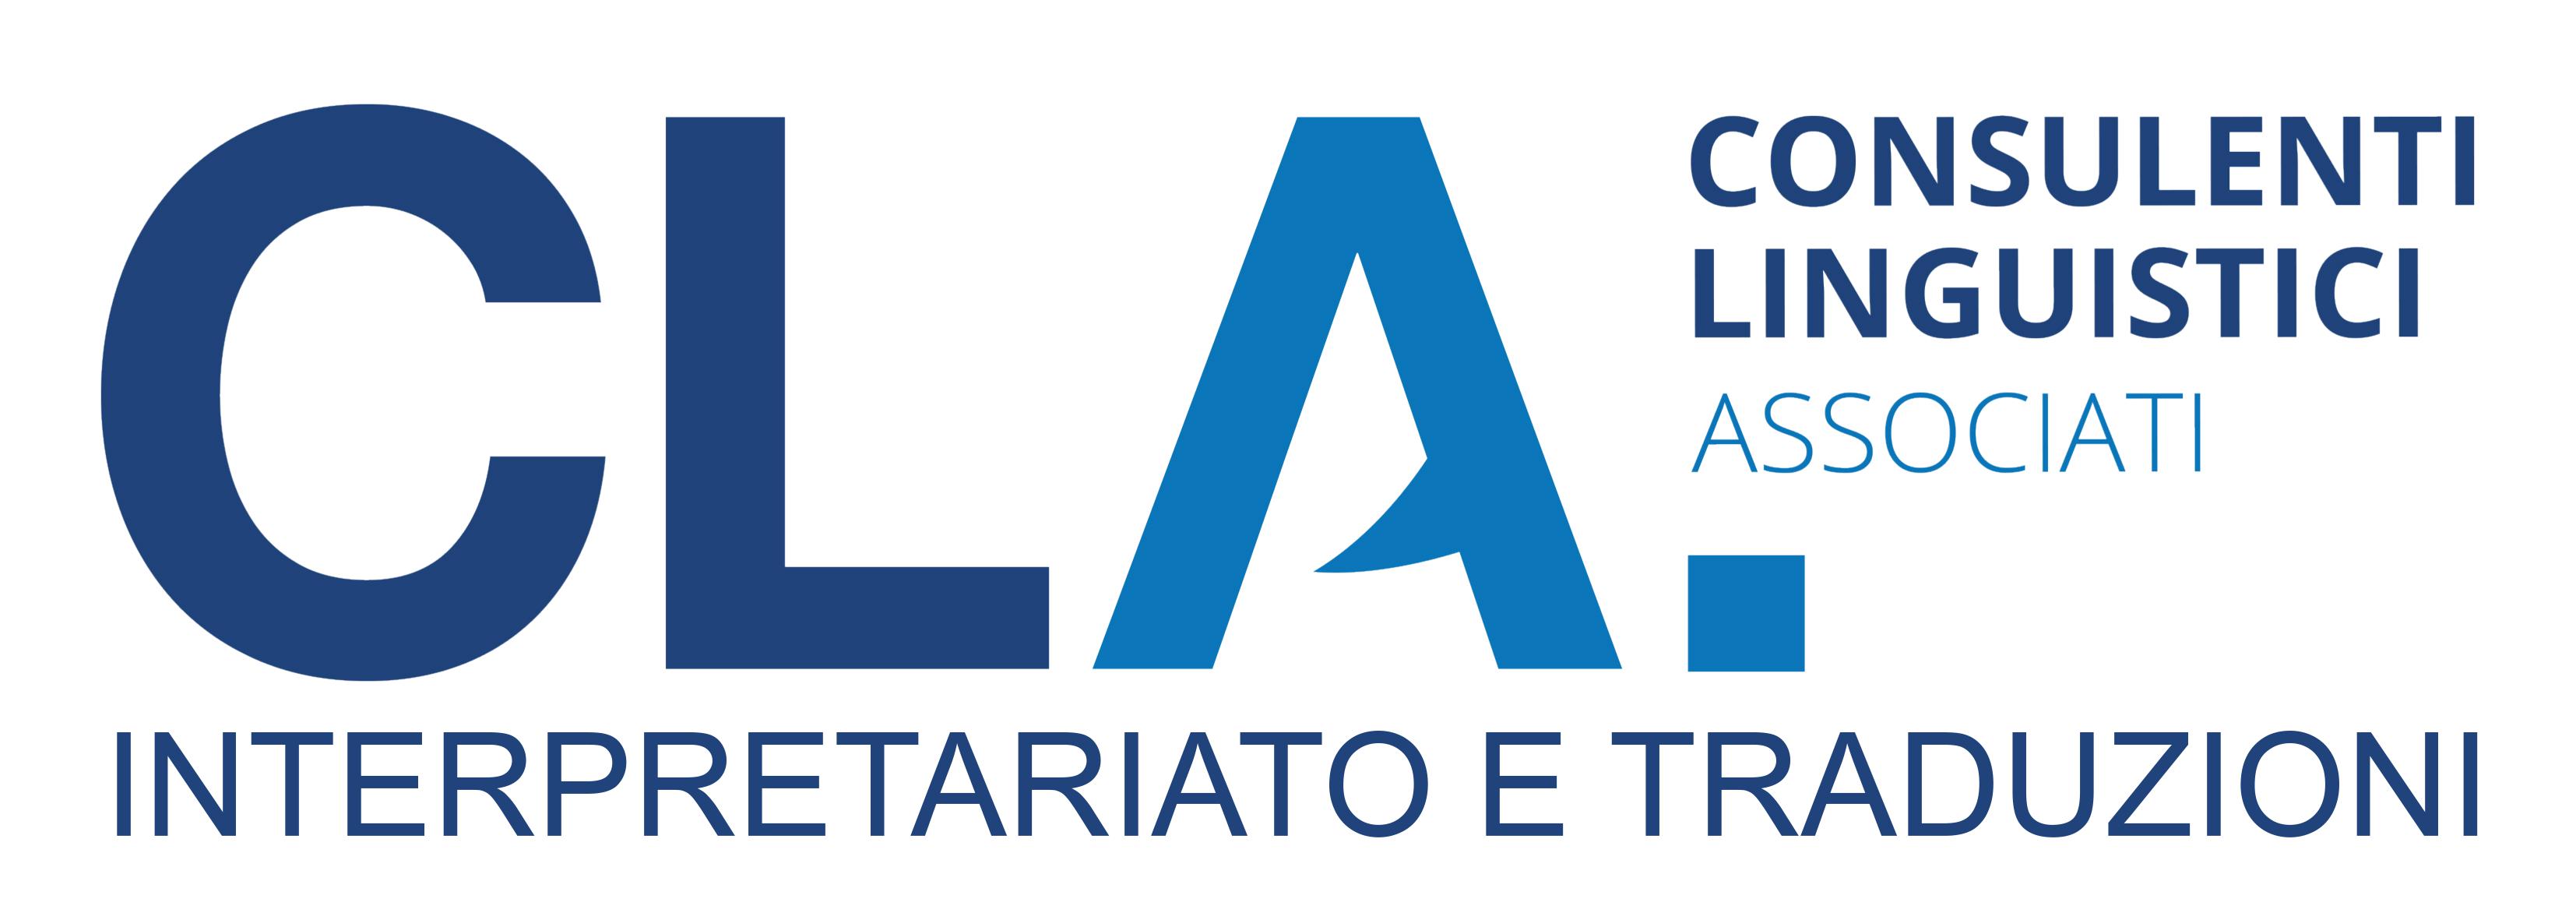 Logo CLA CONSULENTI LINGUISTICI ASSOCIATI